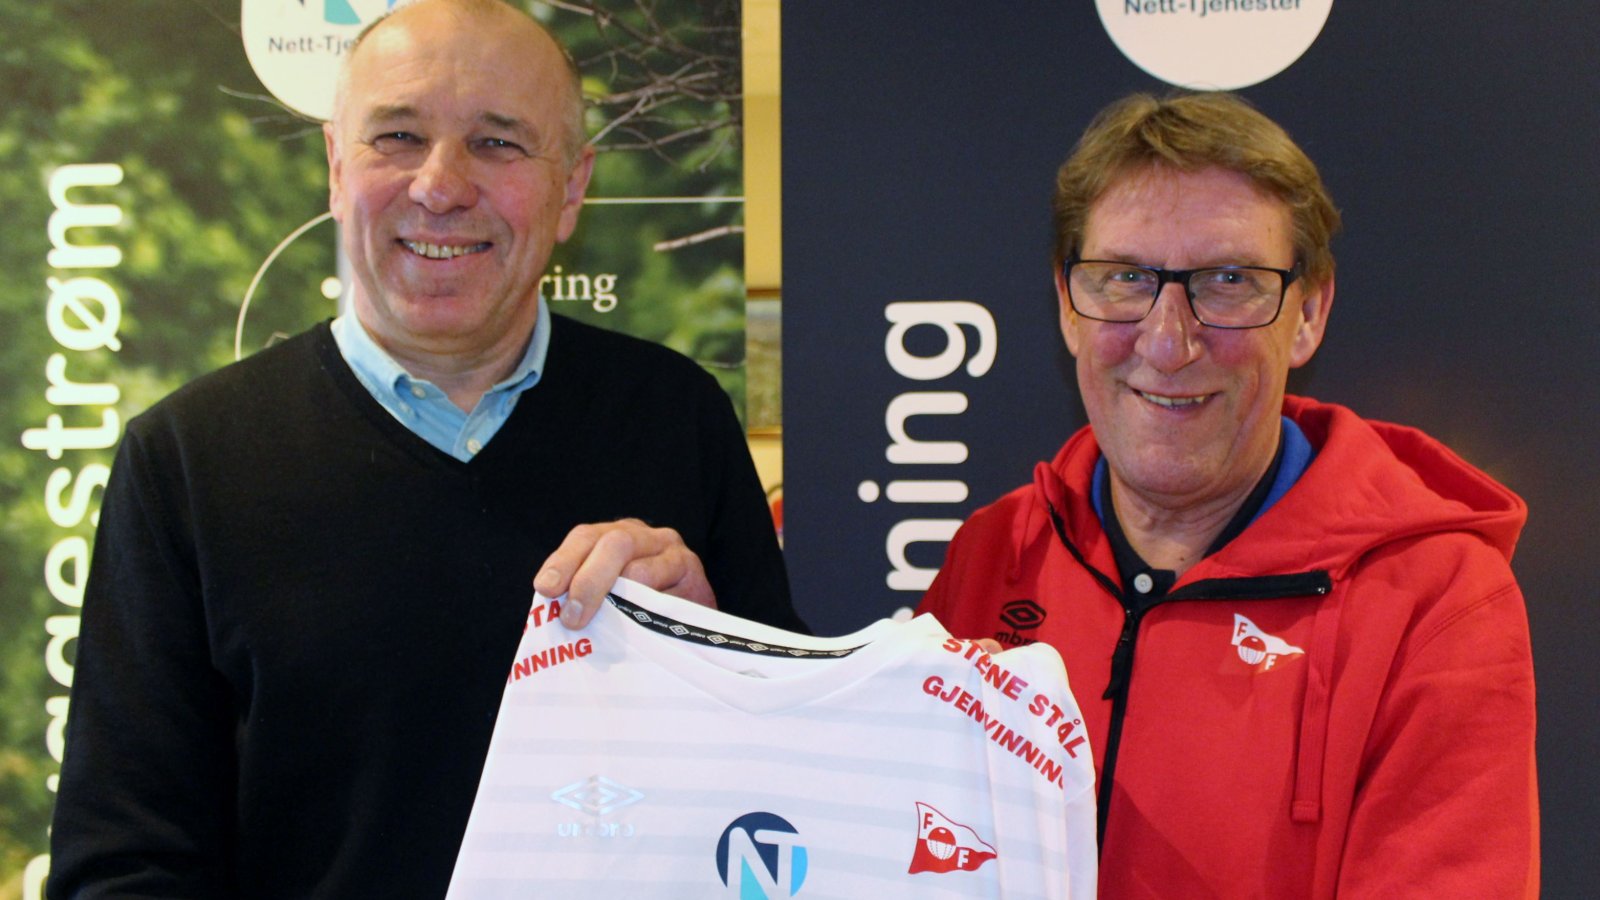 Nett-Tjenester ved Arild Johnsen og FFK ved Robert Nilsson signerte ny avtale for 2017-sesongen.